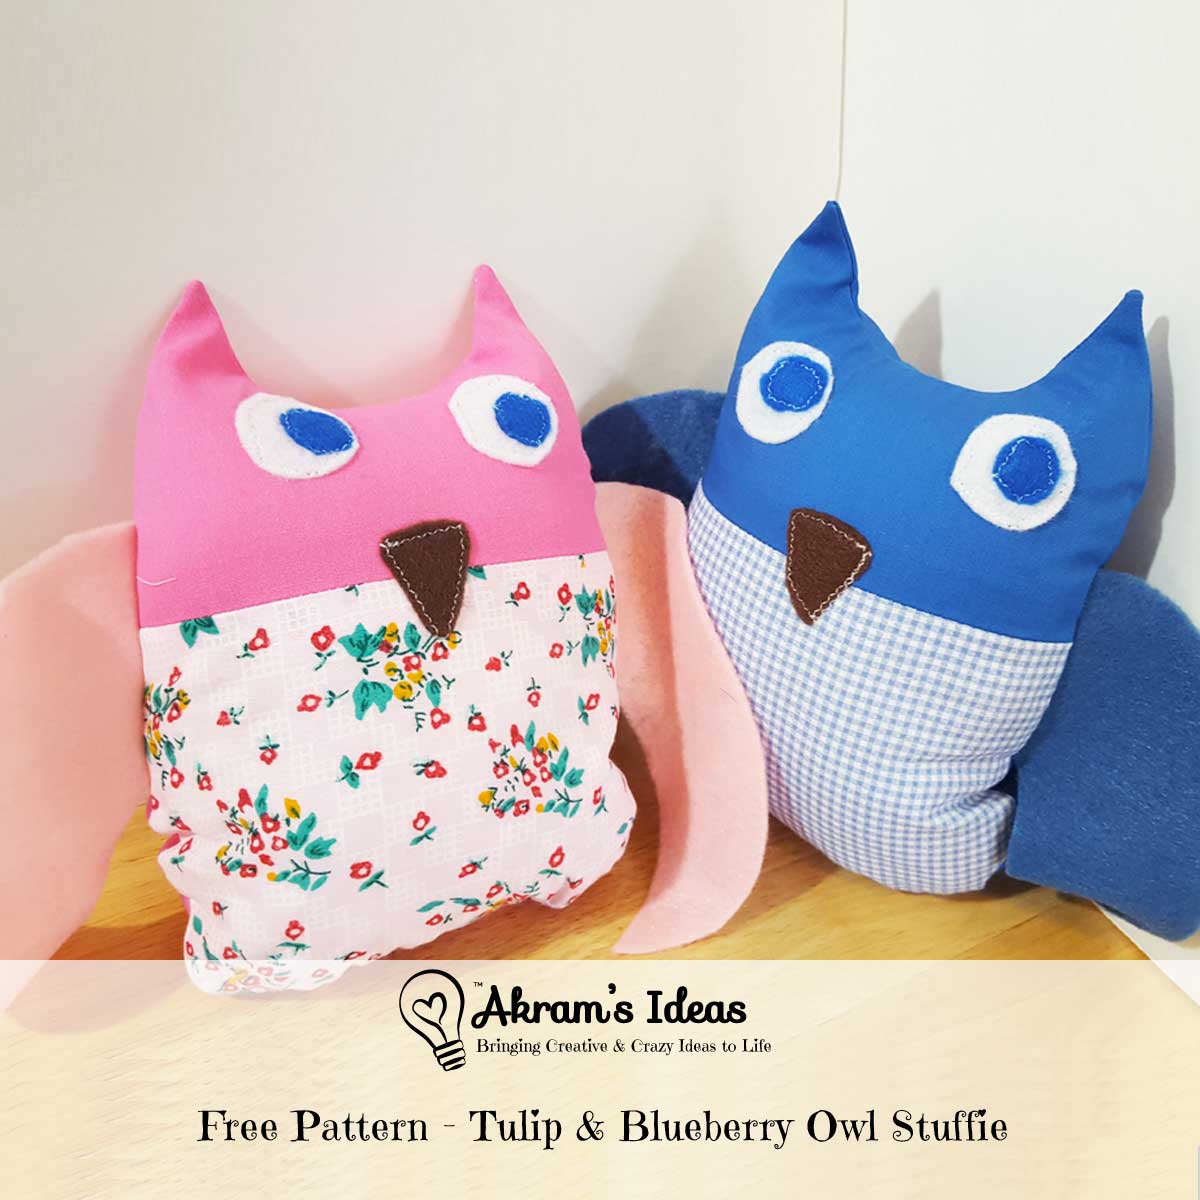 Akram's Ideas: Free Pattern - Tulip & Blueberry Owl Stuffie